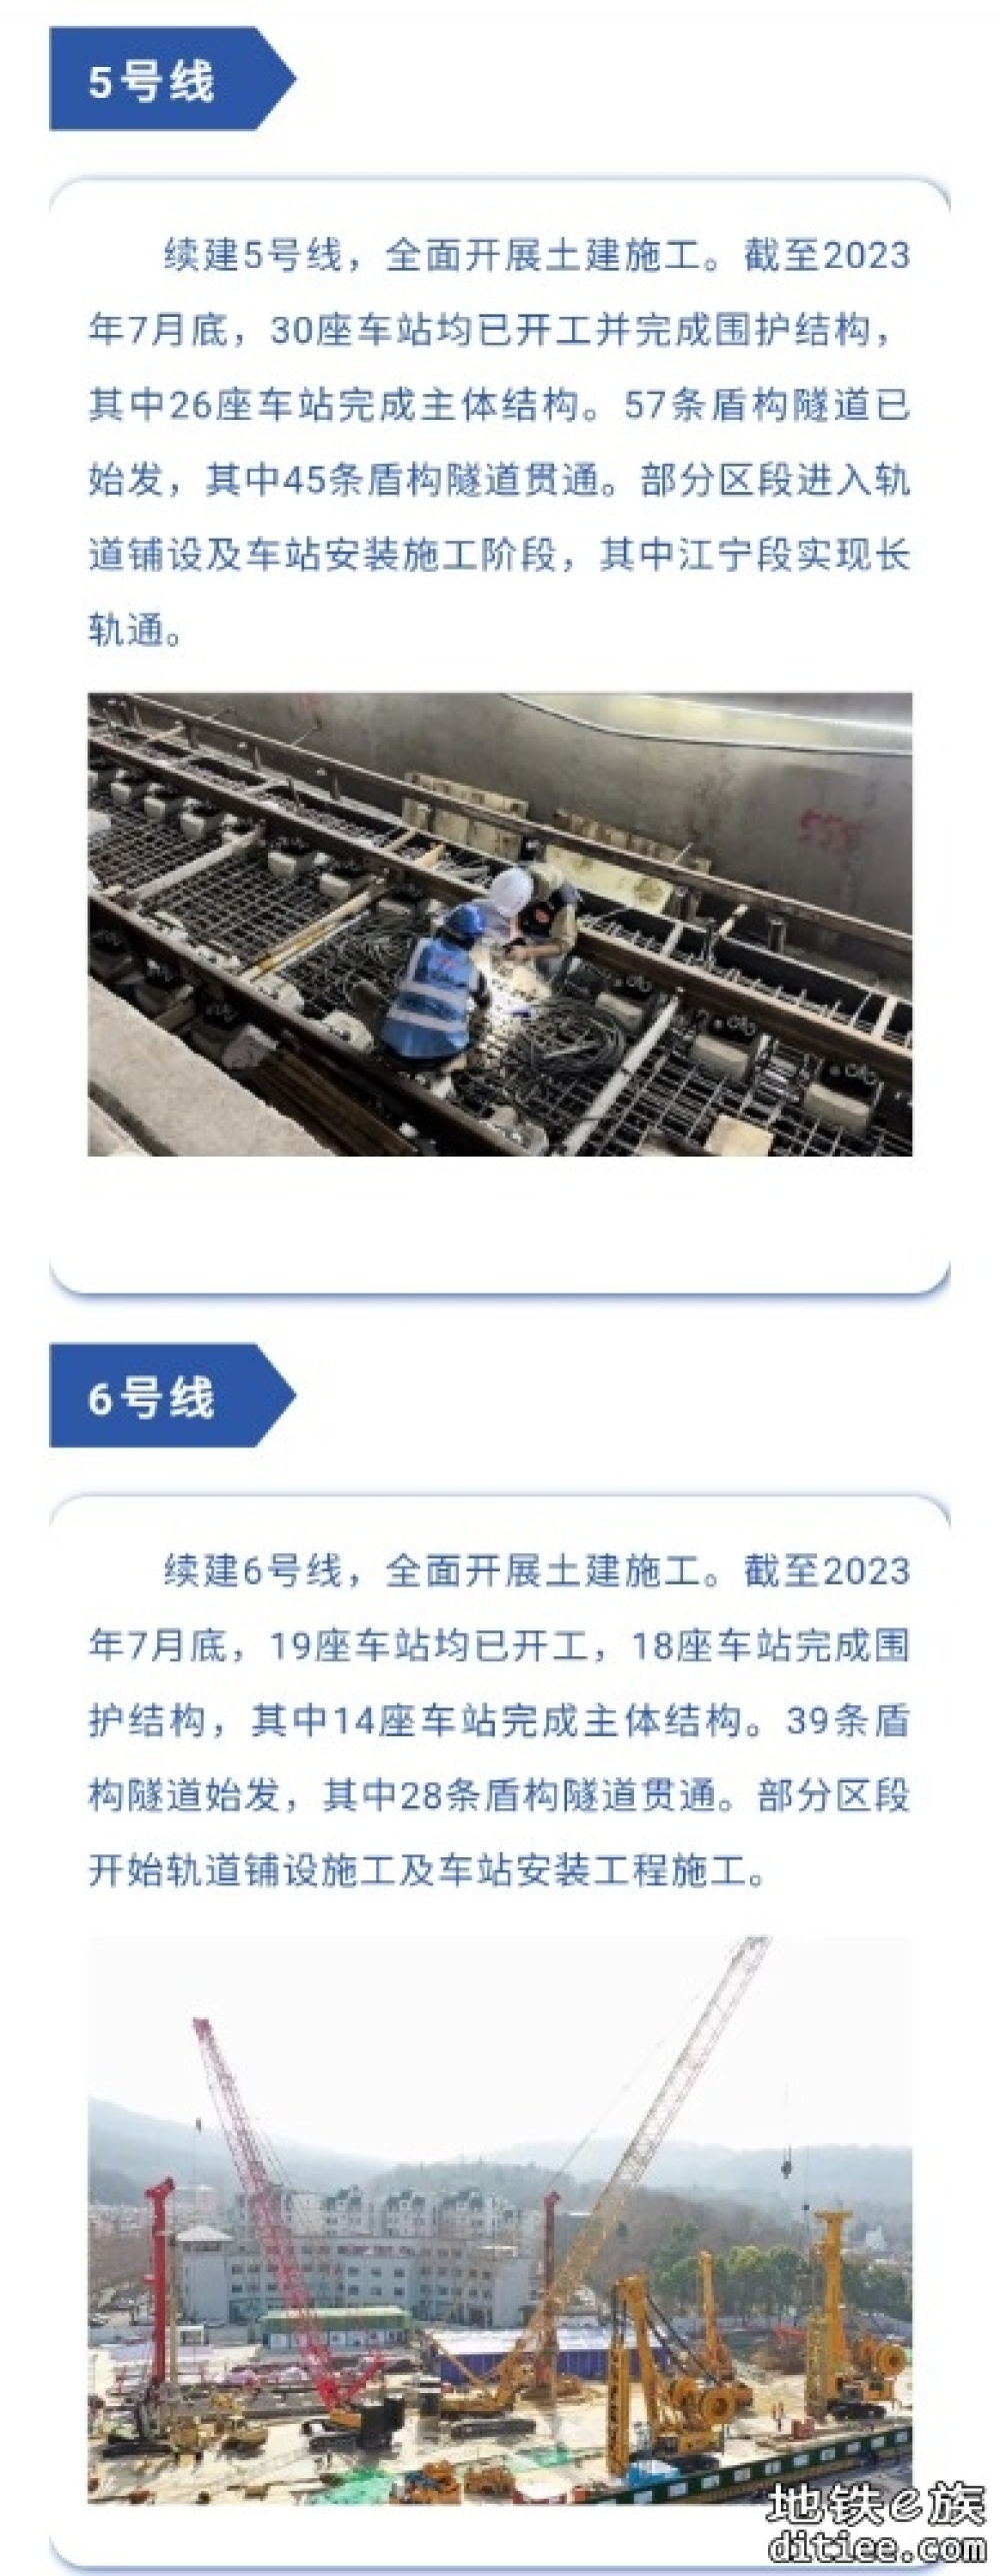 截至7月底｜南京地铁11条在建线路最新动态